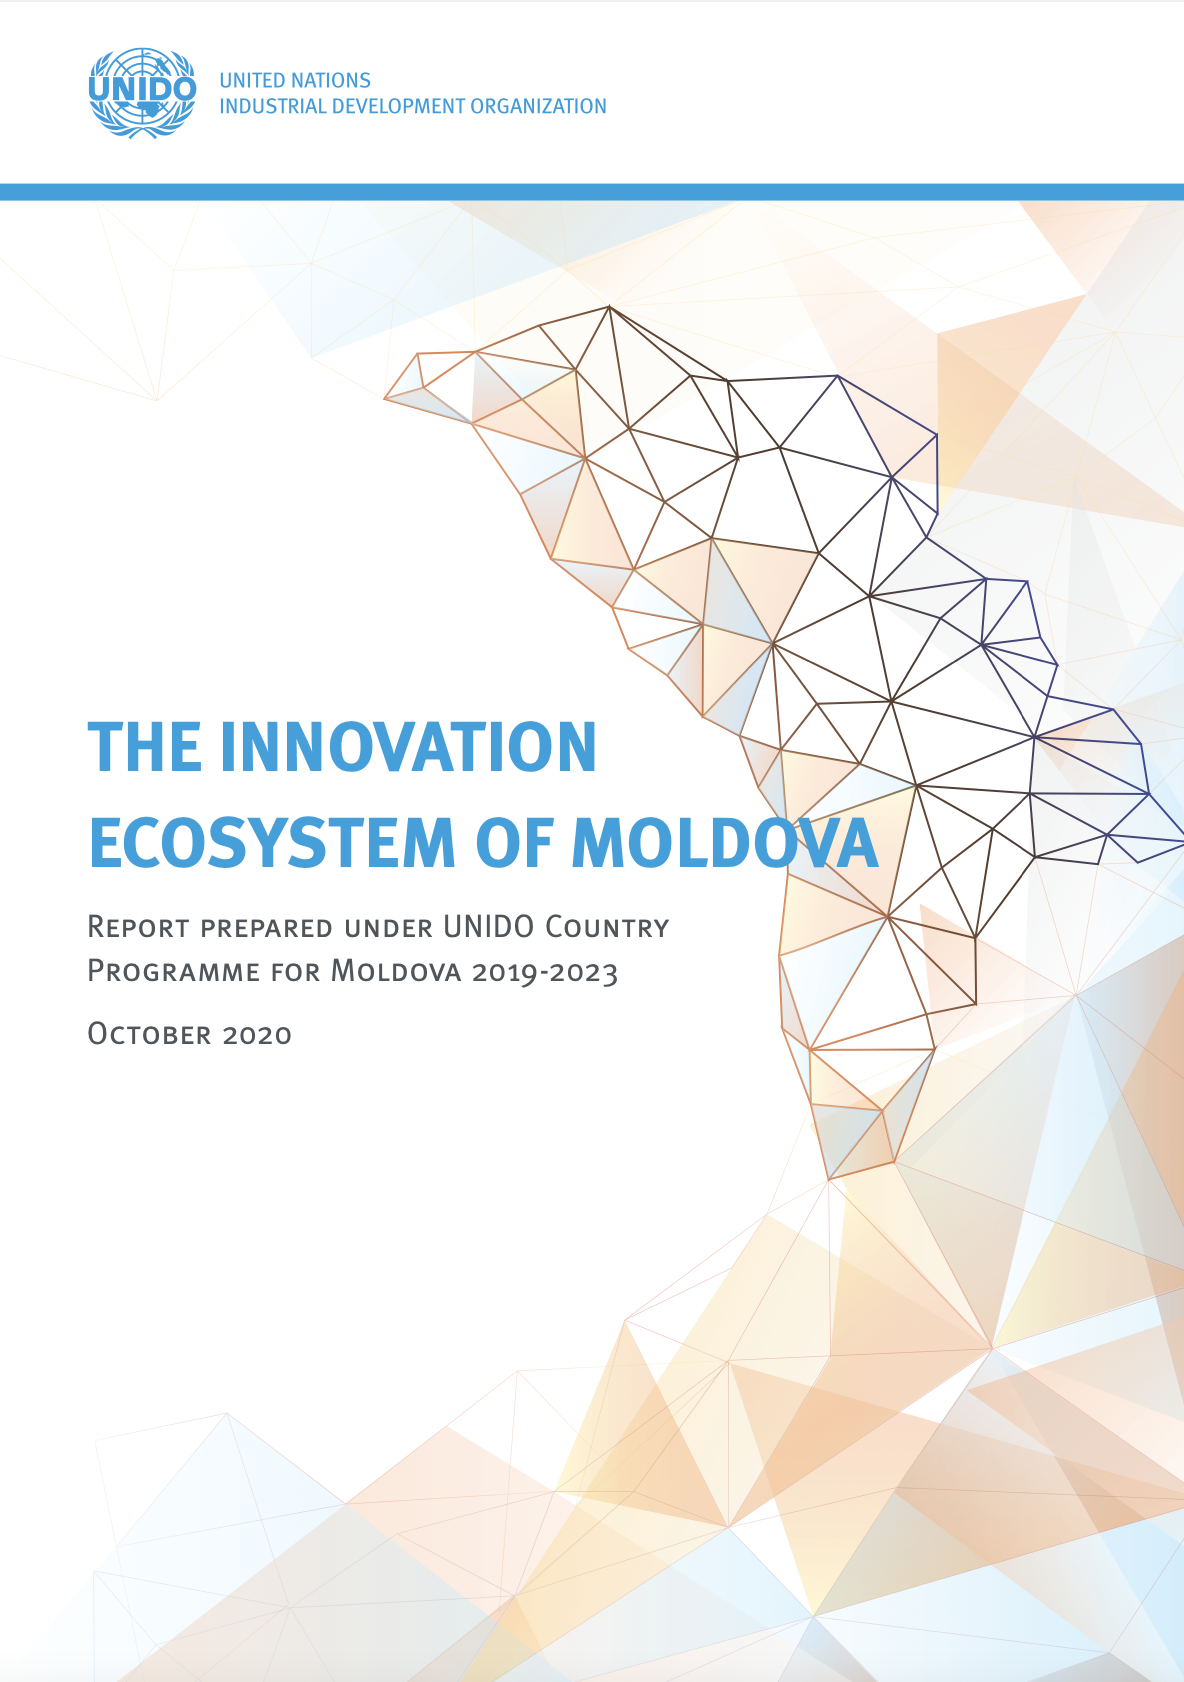 Moldova Innovation Ecosystem